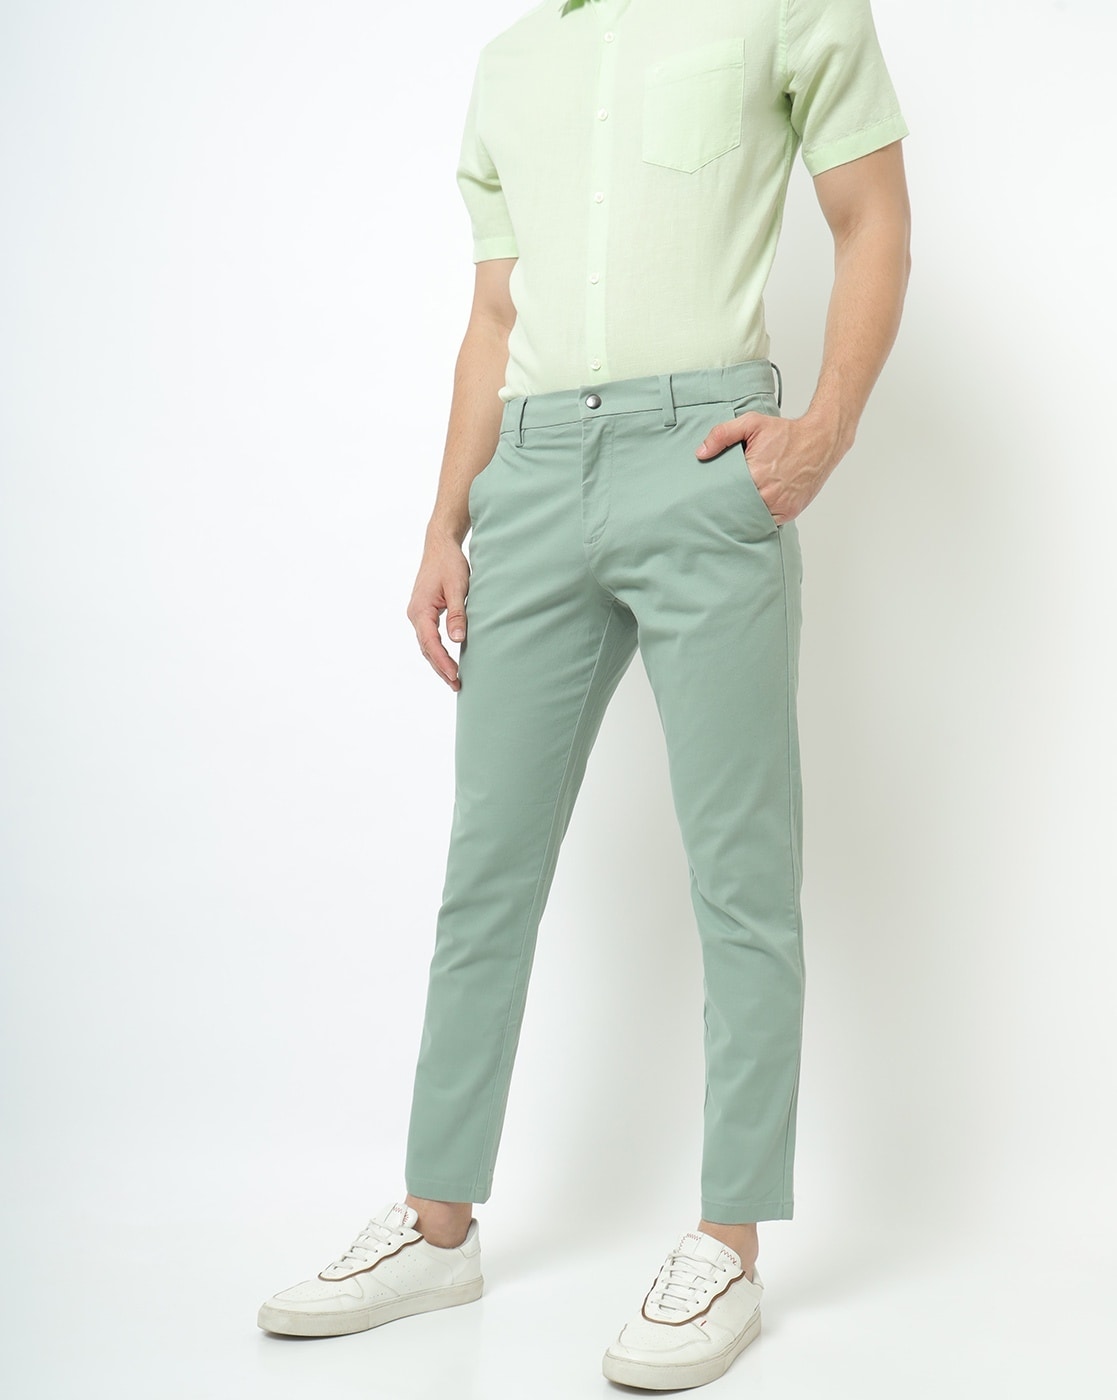 Buy Men Luxury Slim Fit Light Lycra Blend Comfortable Trousers  BAPAEnterprisesTrouserLight Green28 at Amazonin